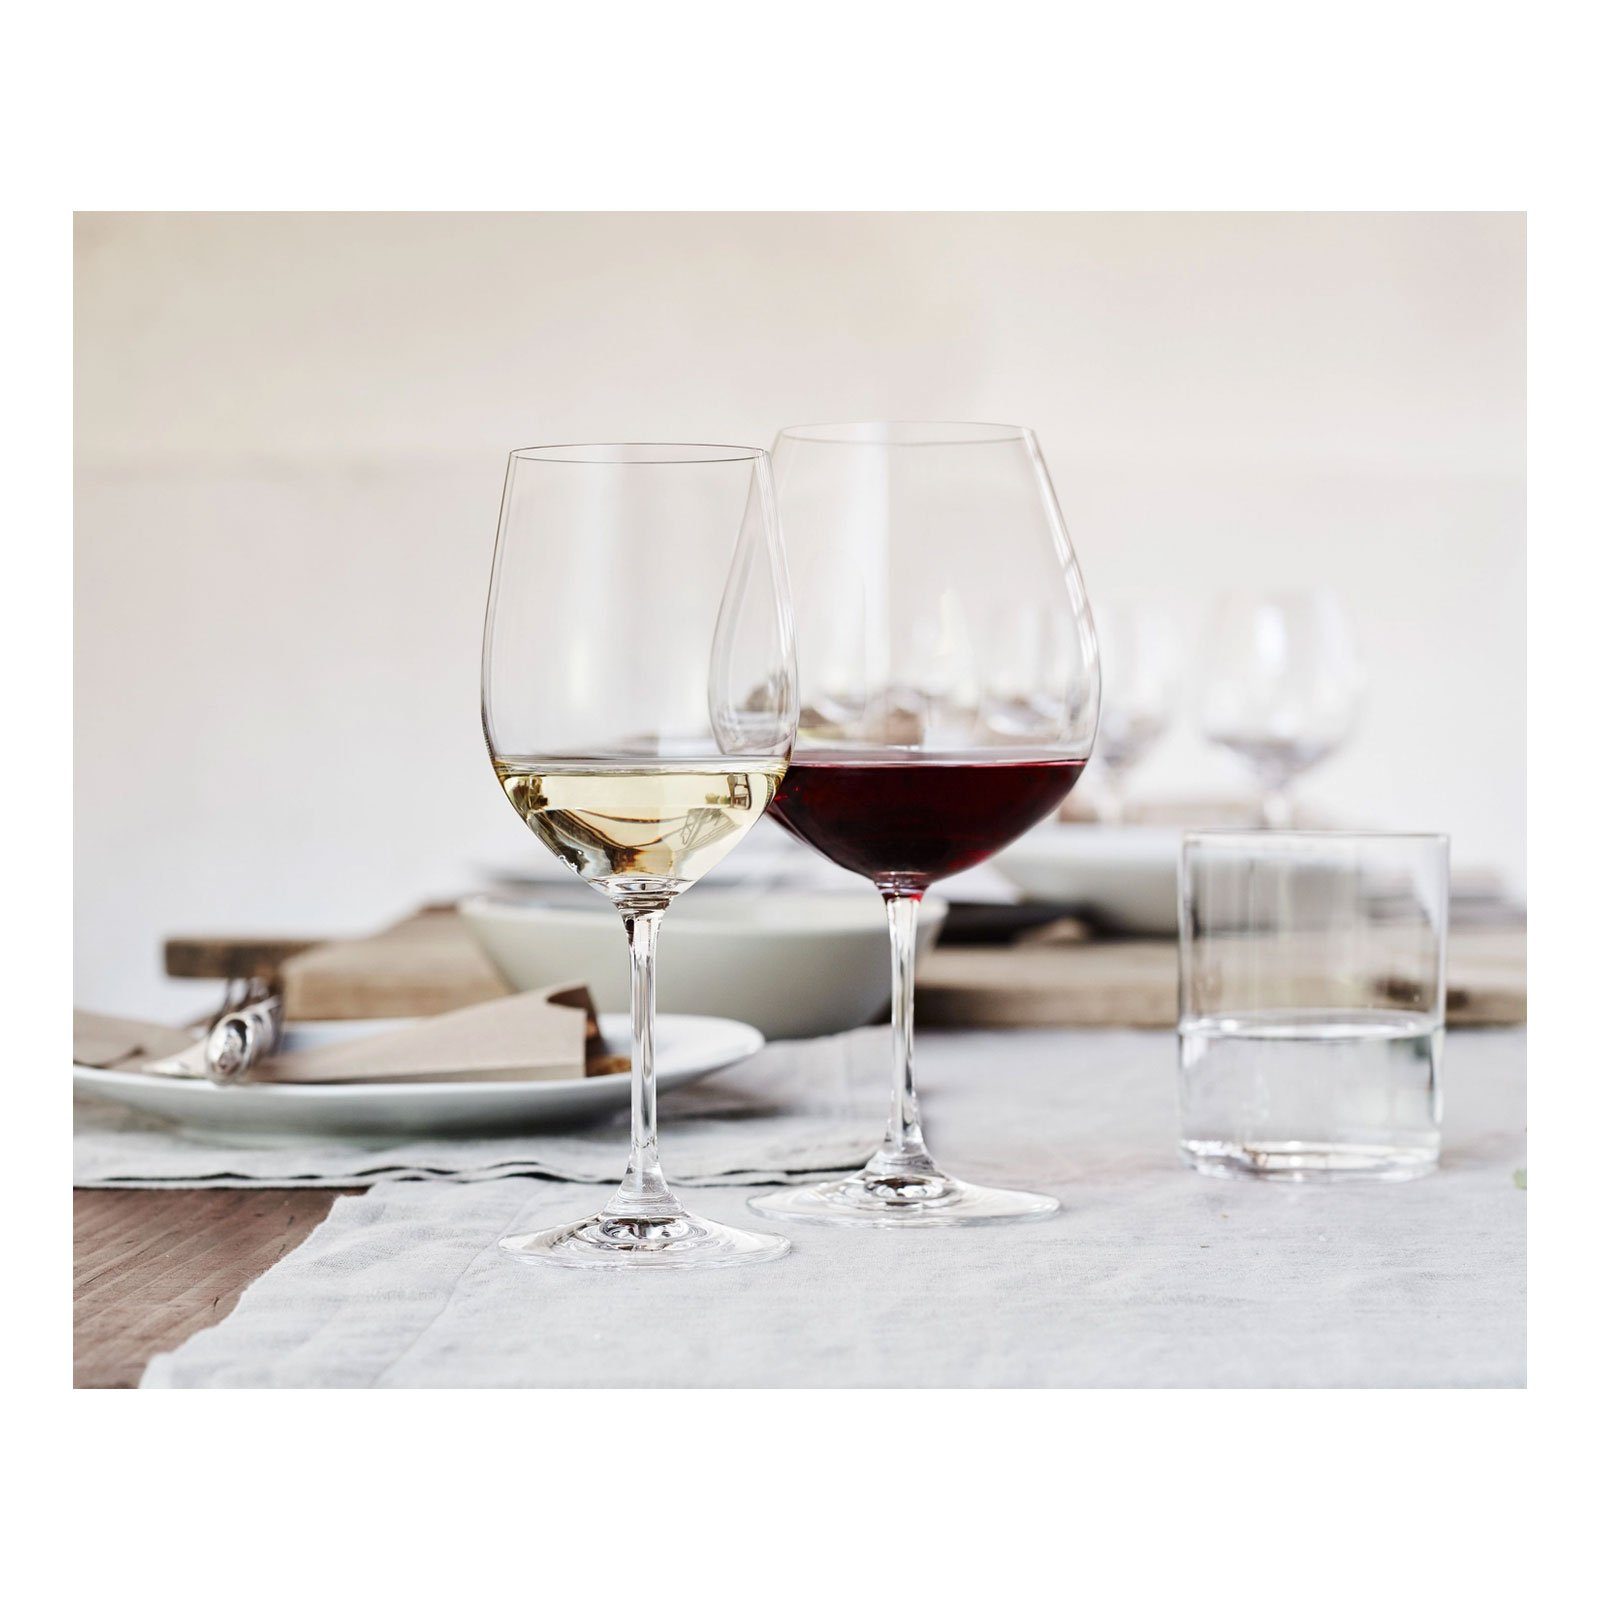 RIEDEL Glas Vinum Glas Chardonnay, Viognier Glas / Rebsortenspezifisches